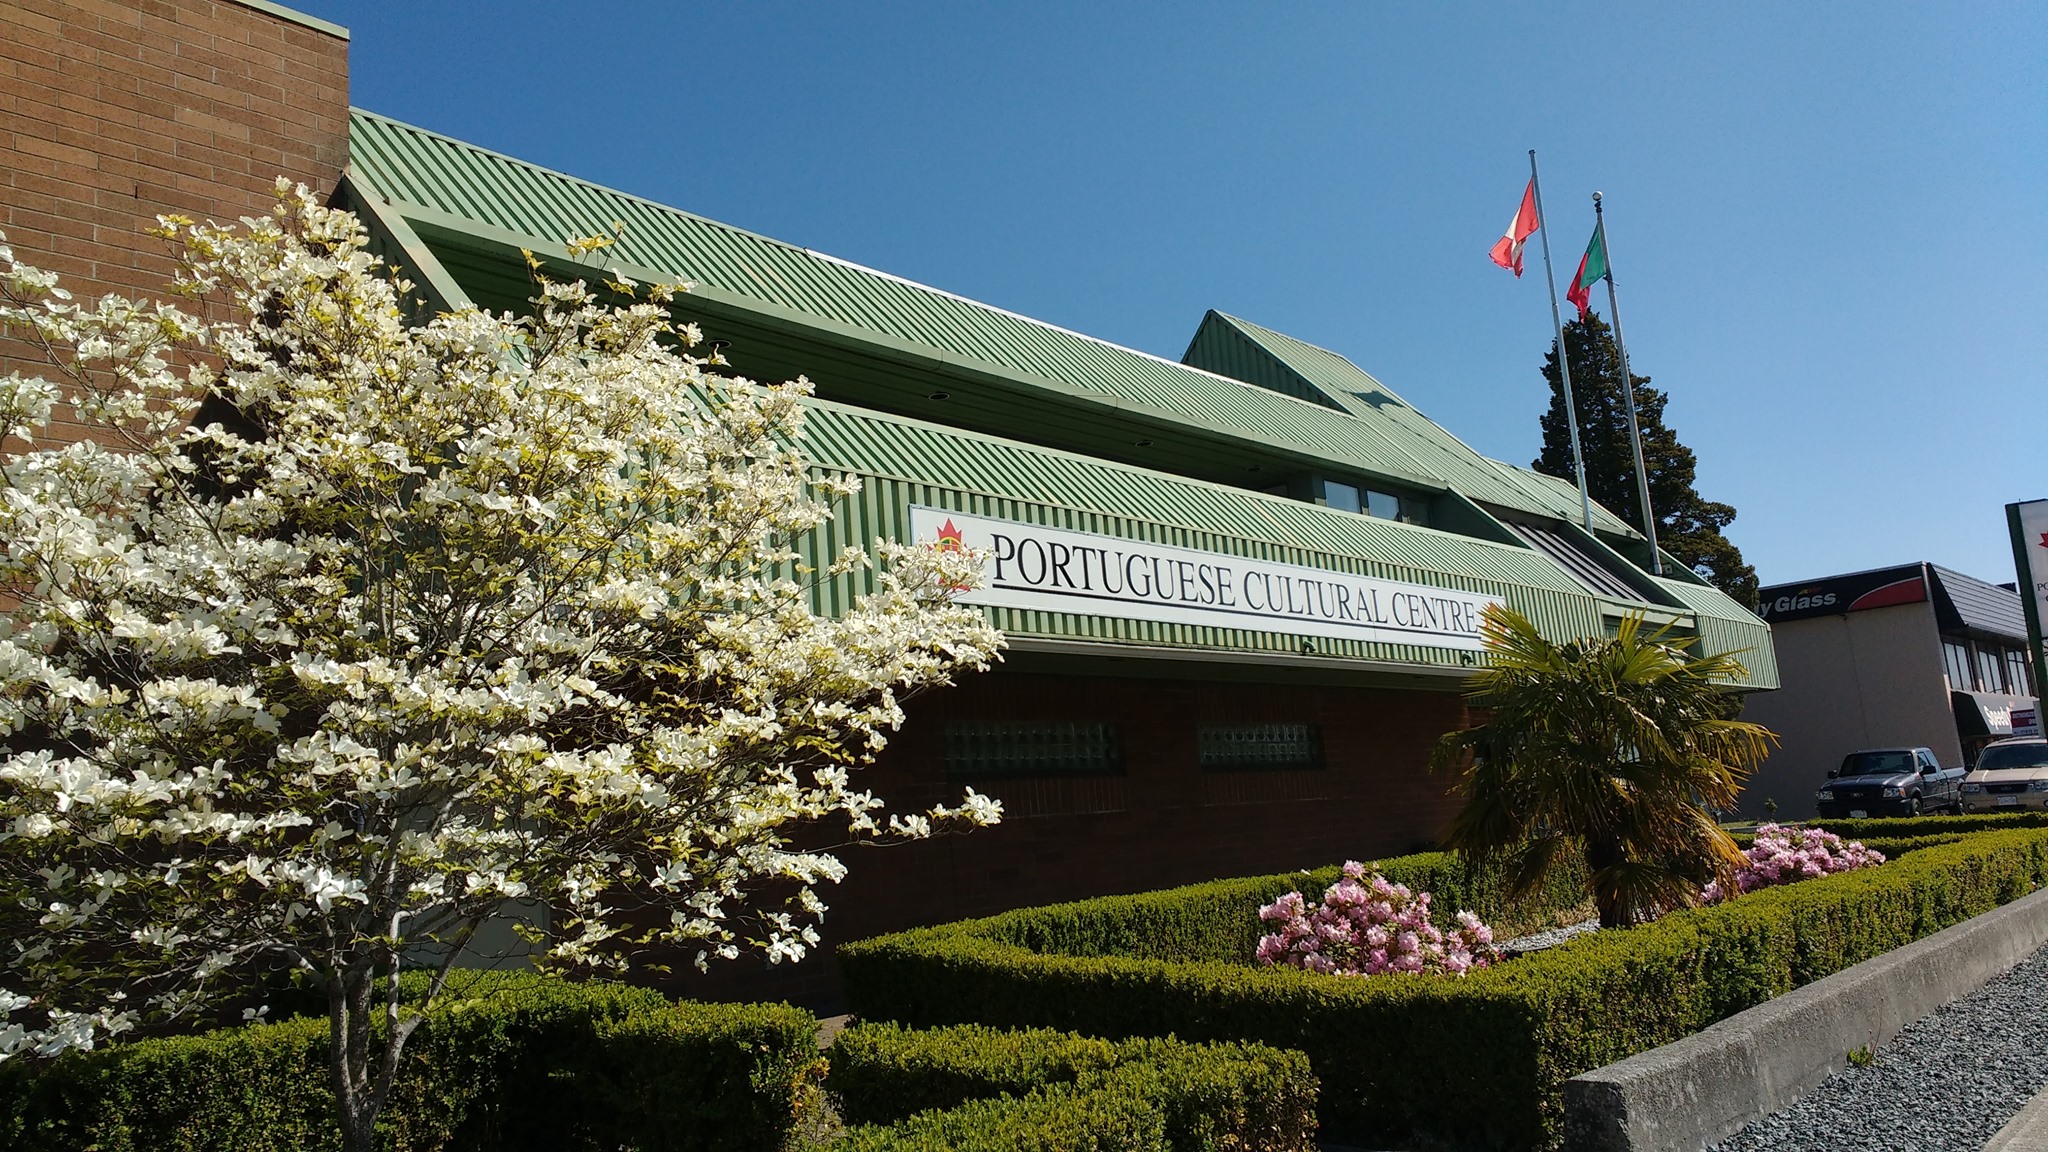 Portuguese Cultural Centre of BC